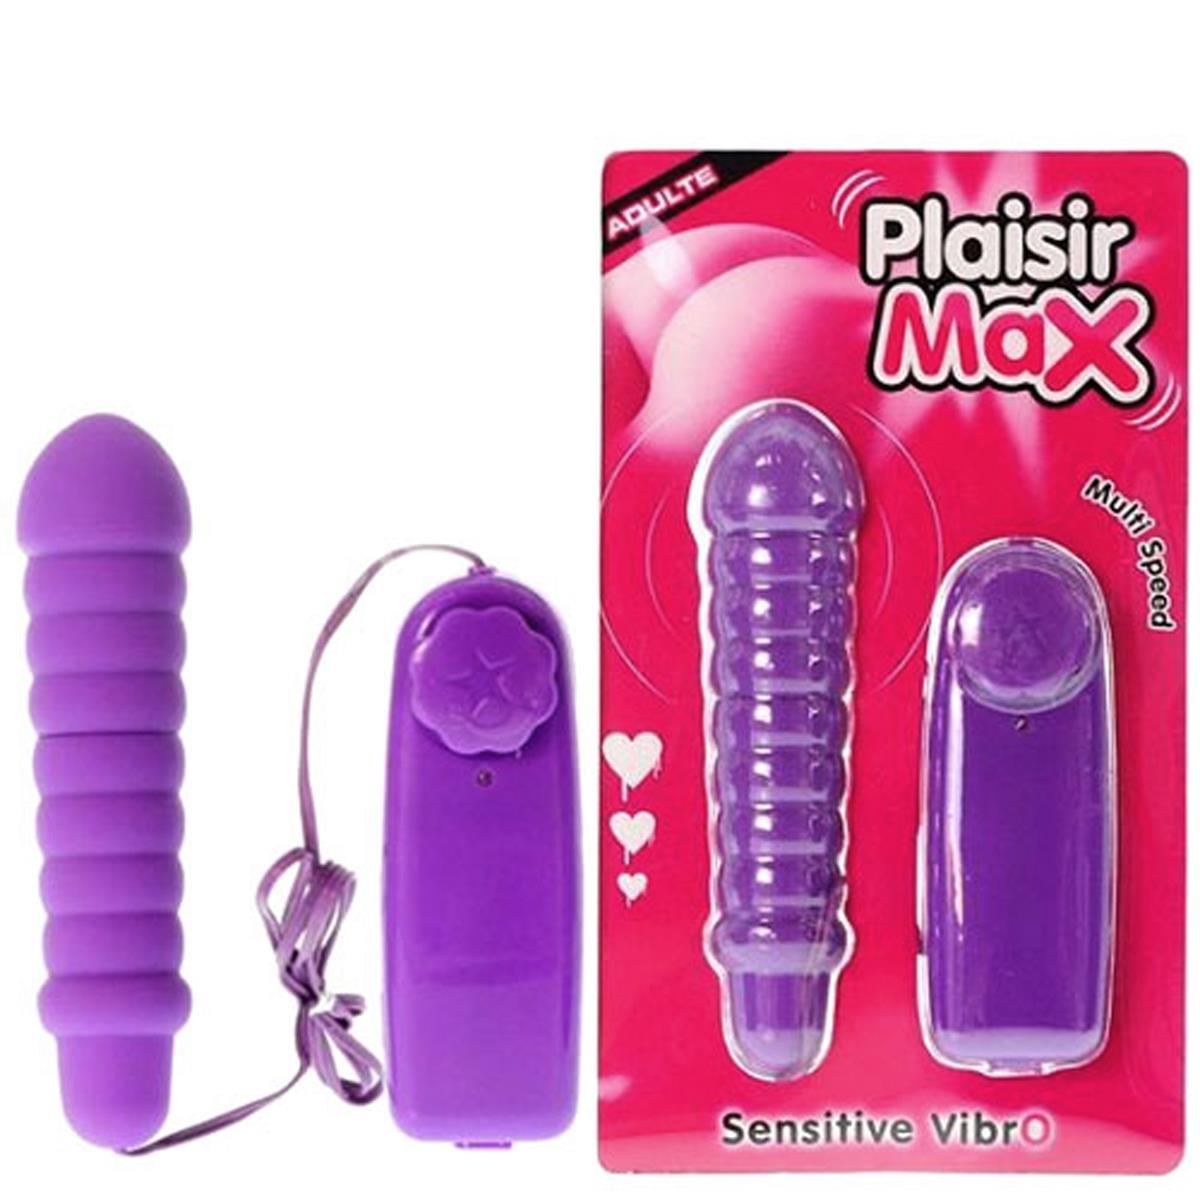 Plaisir Max Sensitive Vibro K Import & Export